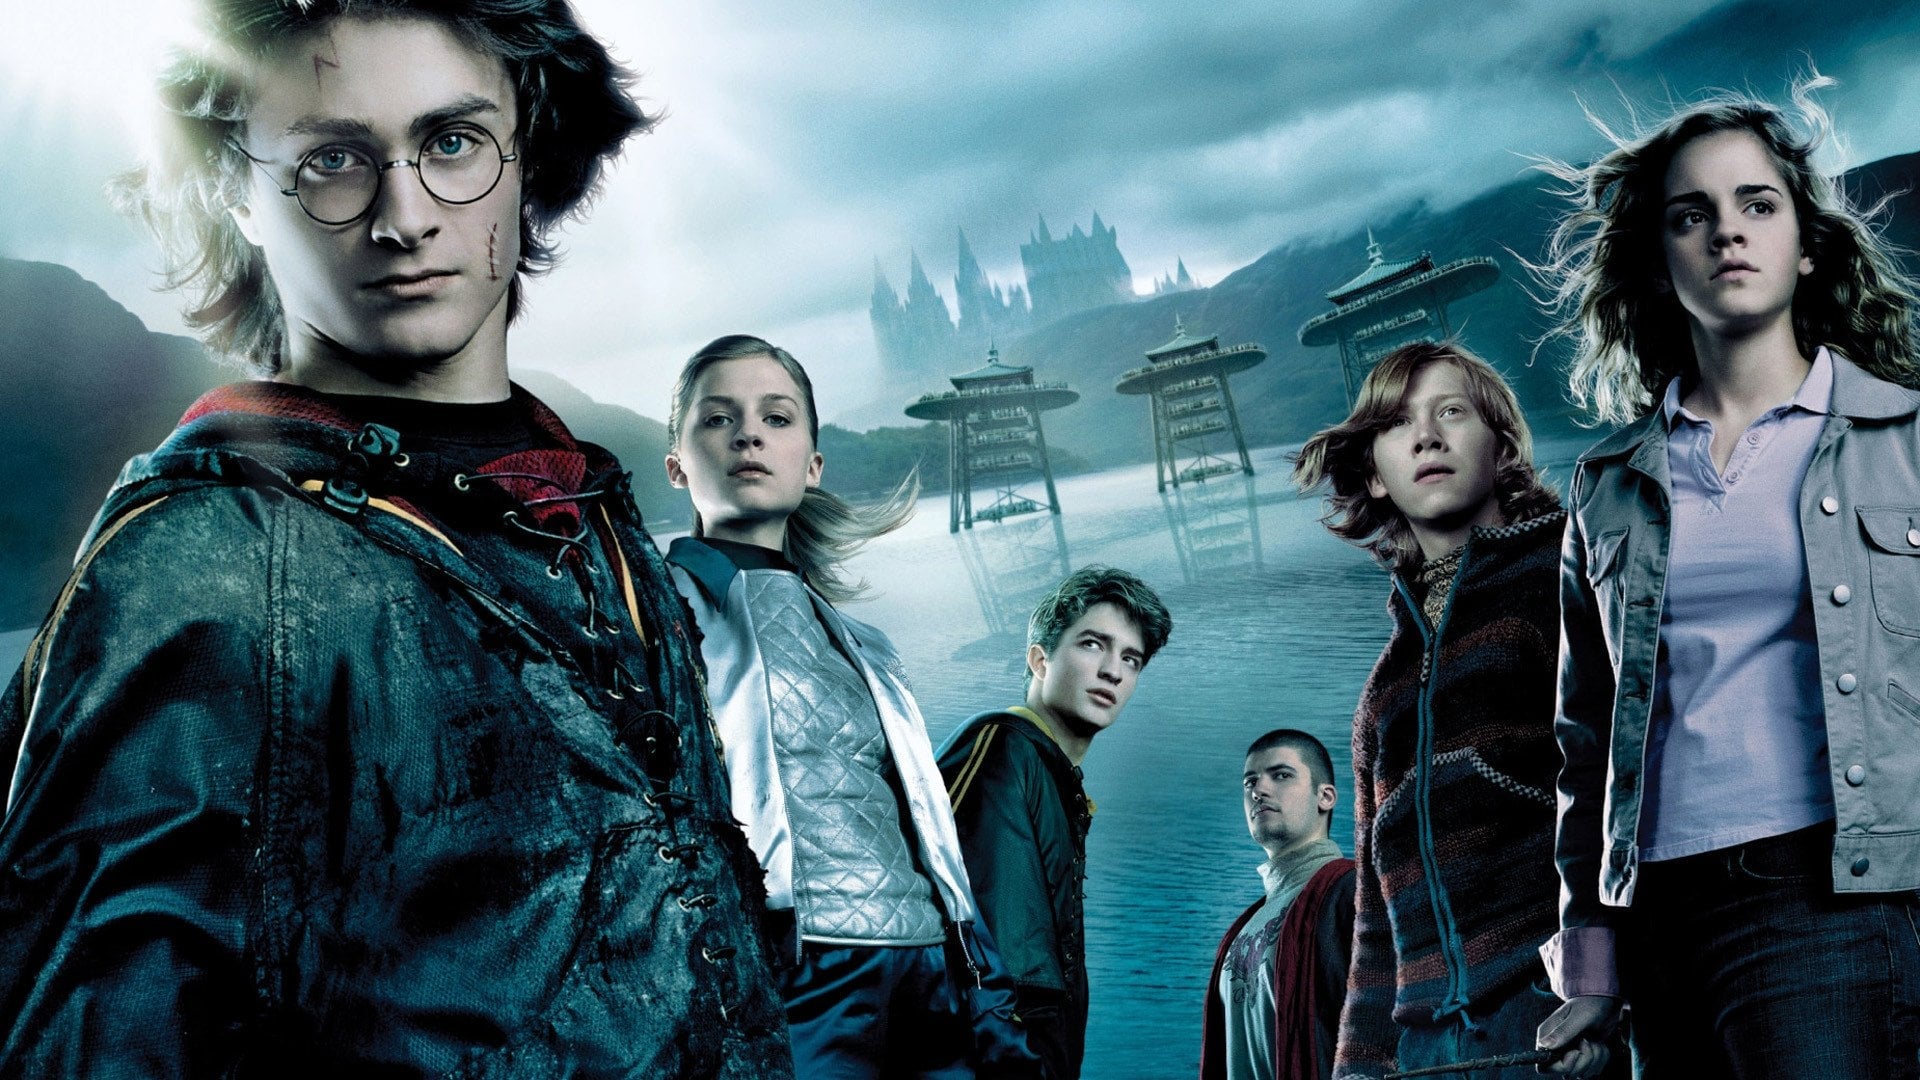 Harry Potter i Czara Ognia (2005)